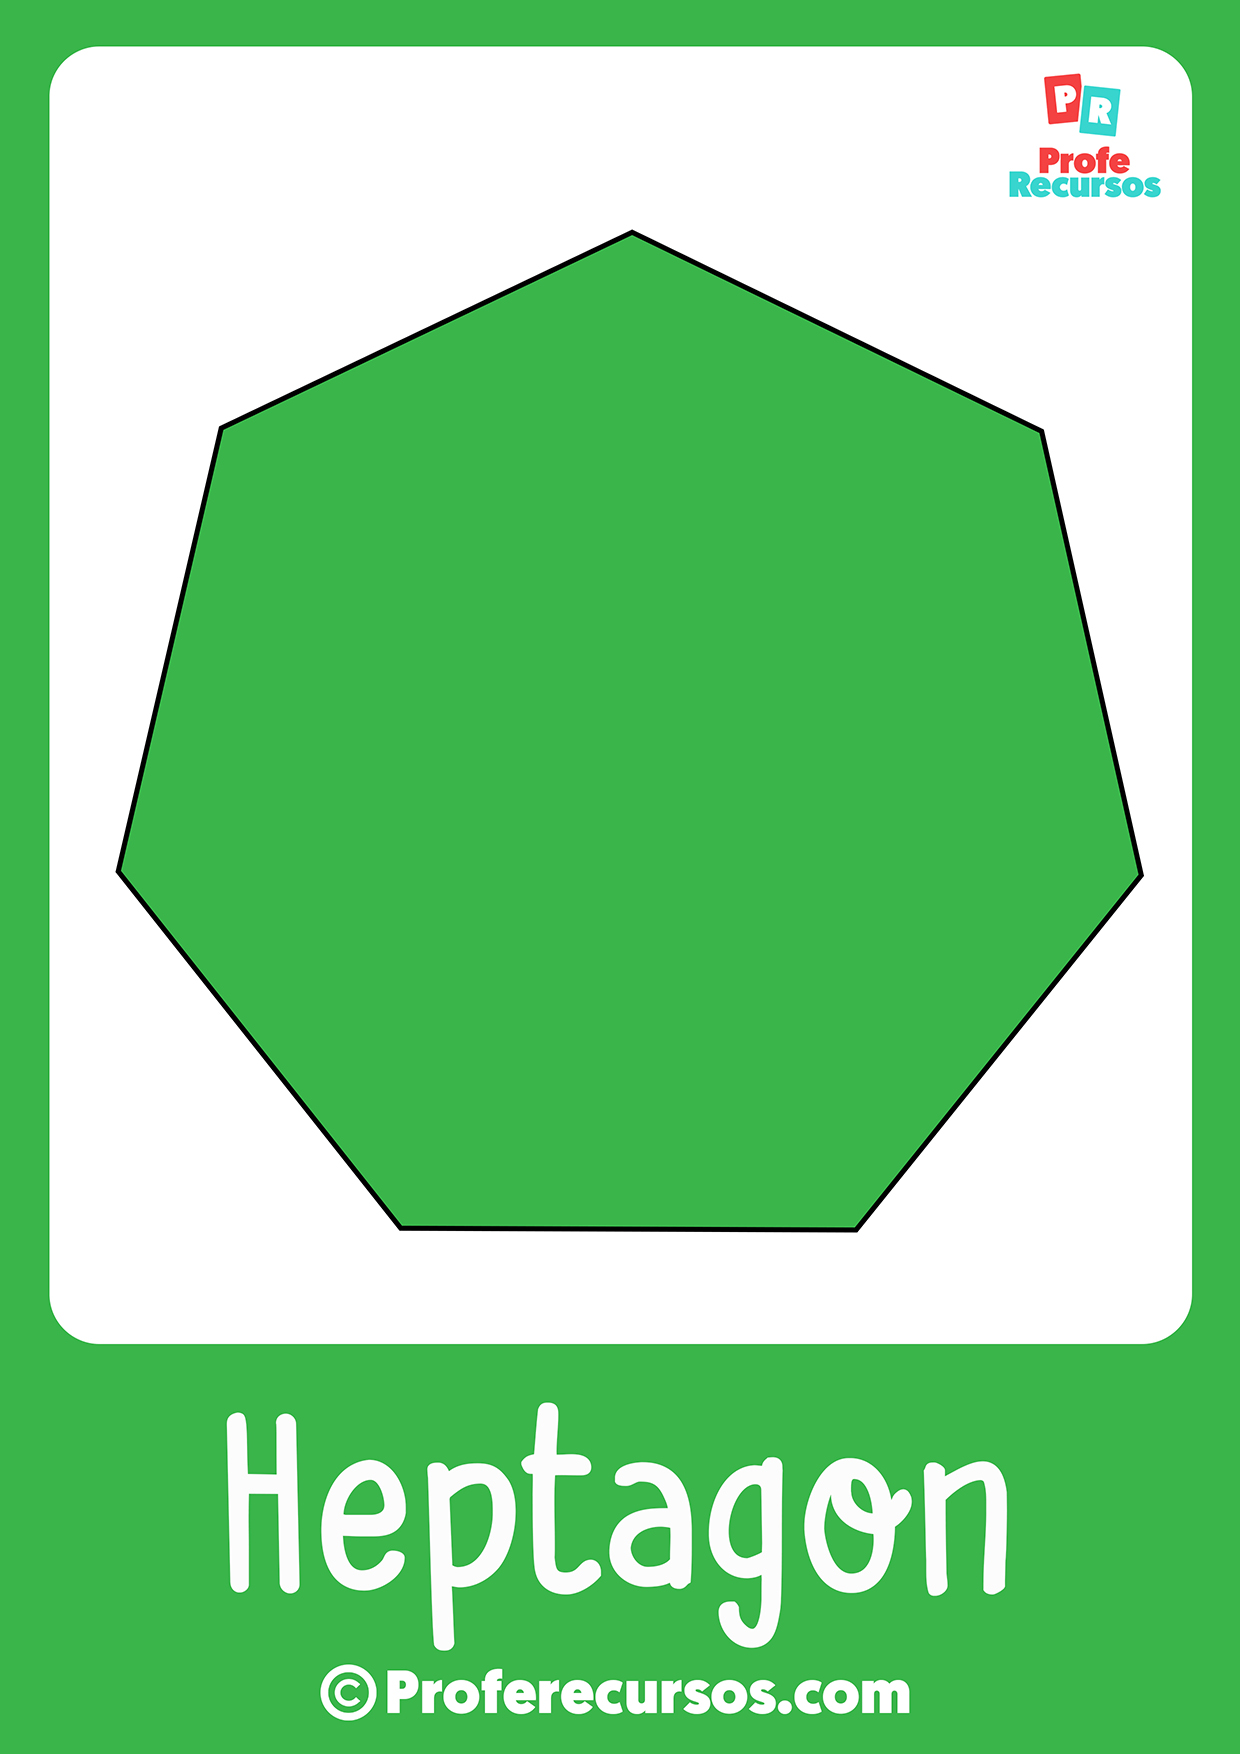 Heptagon shape